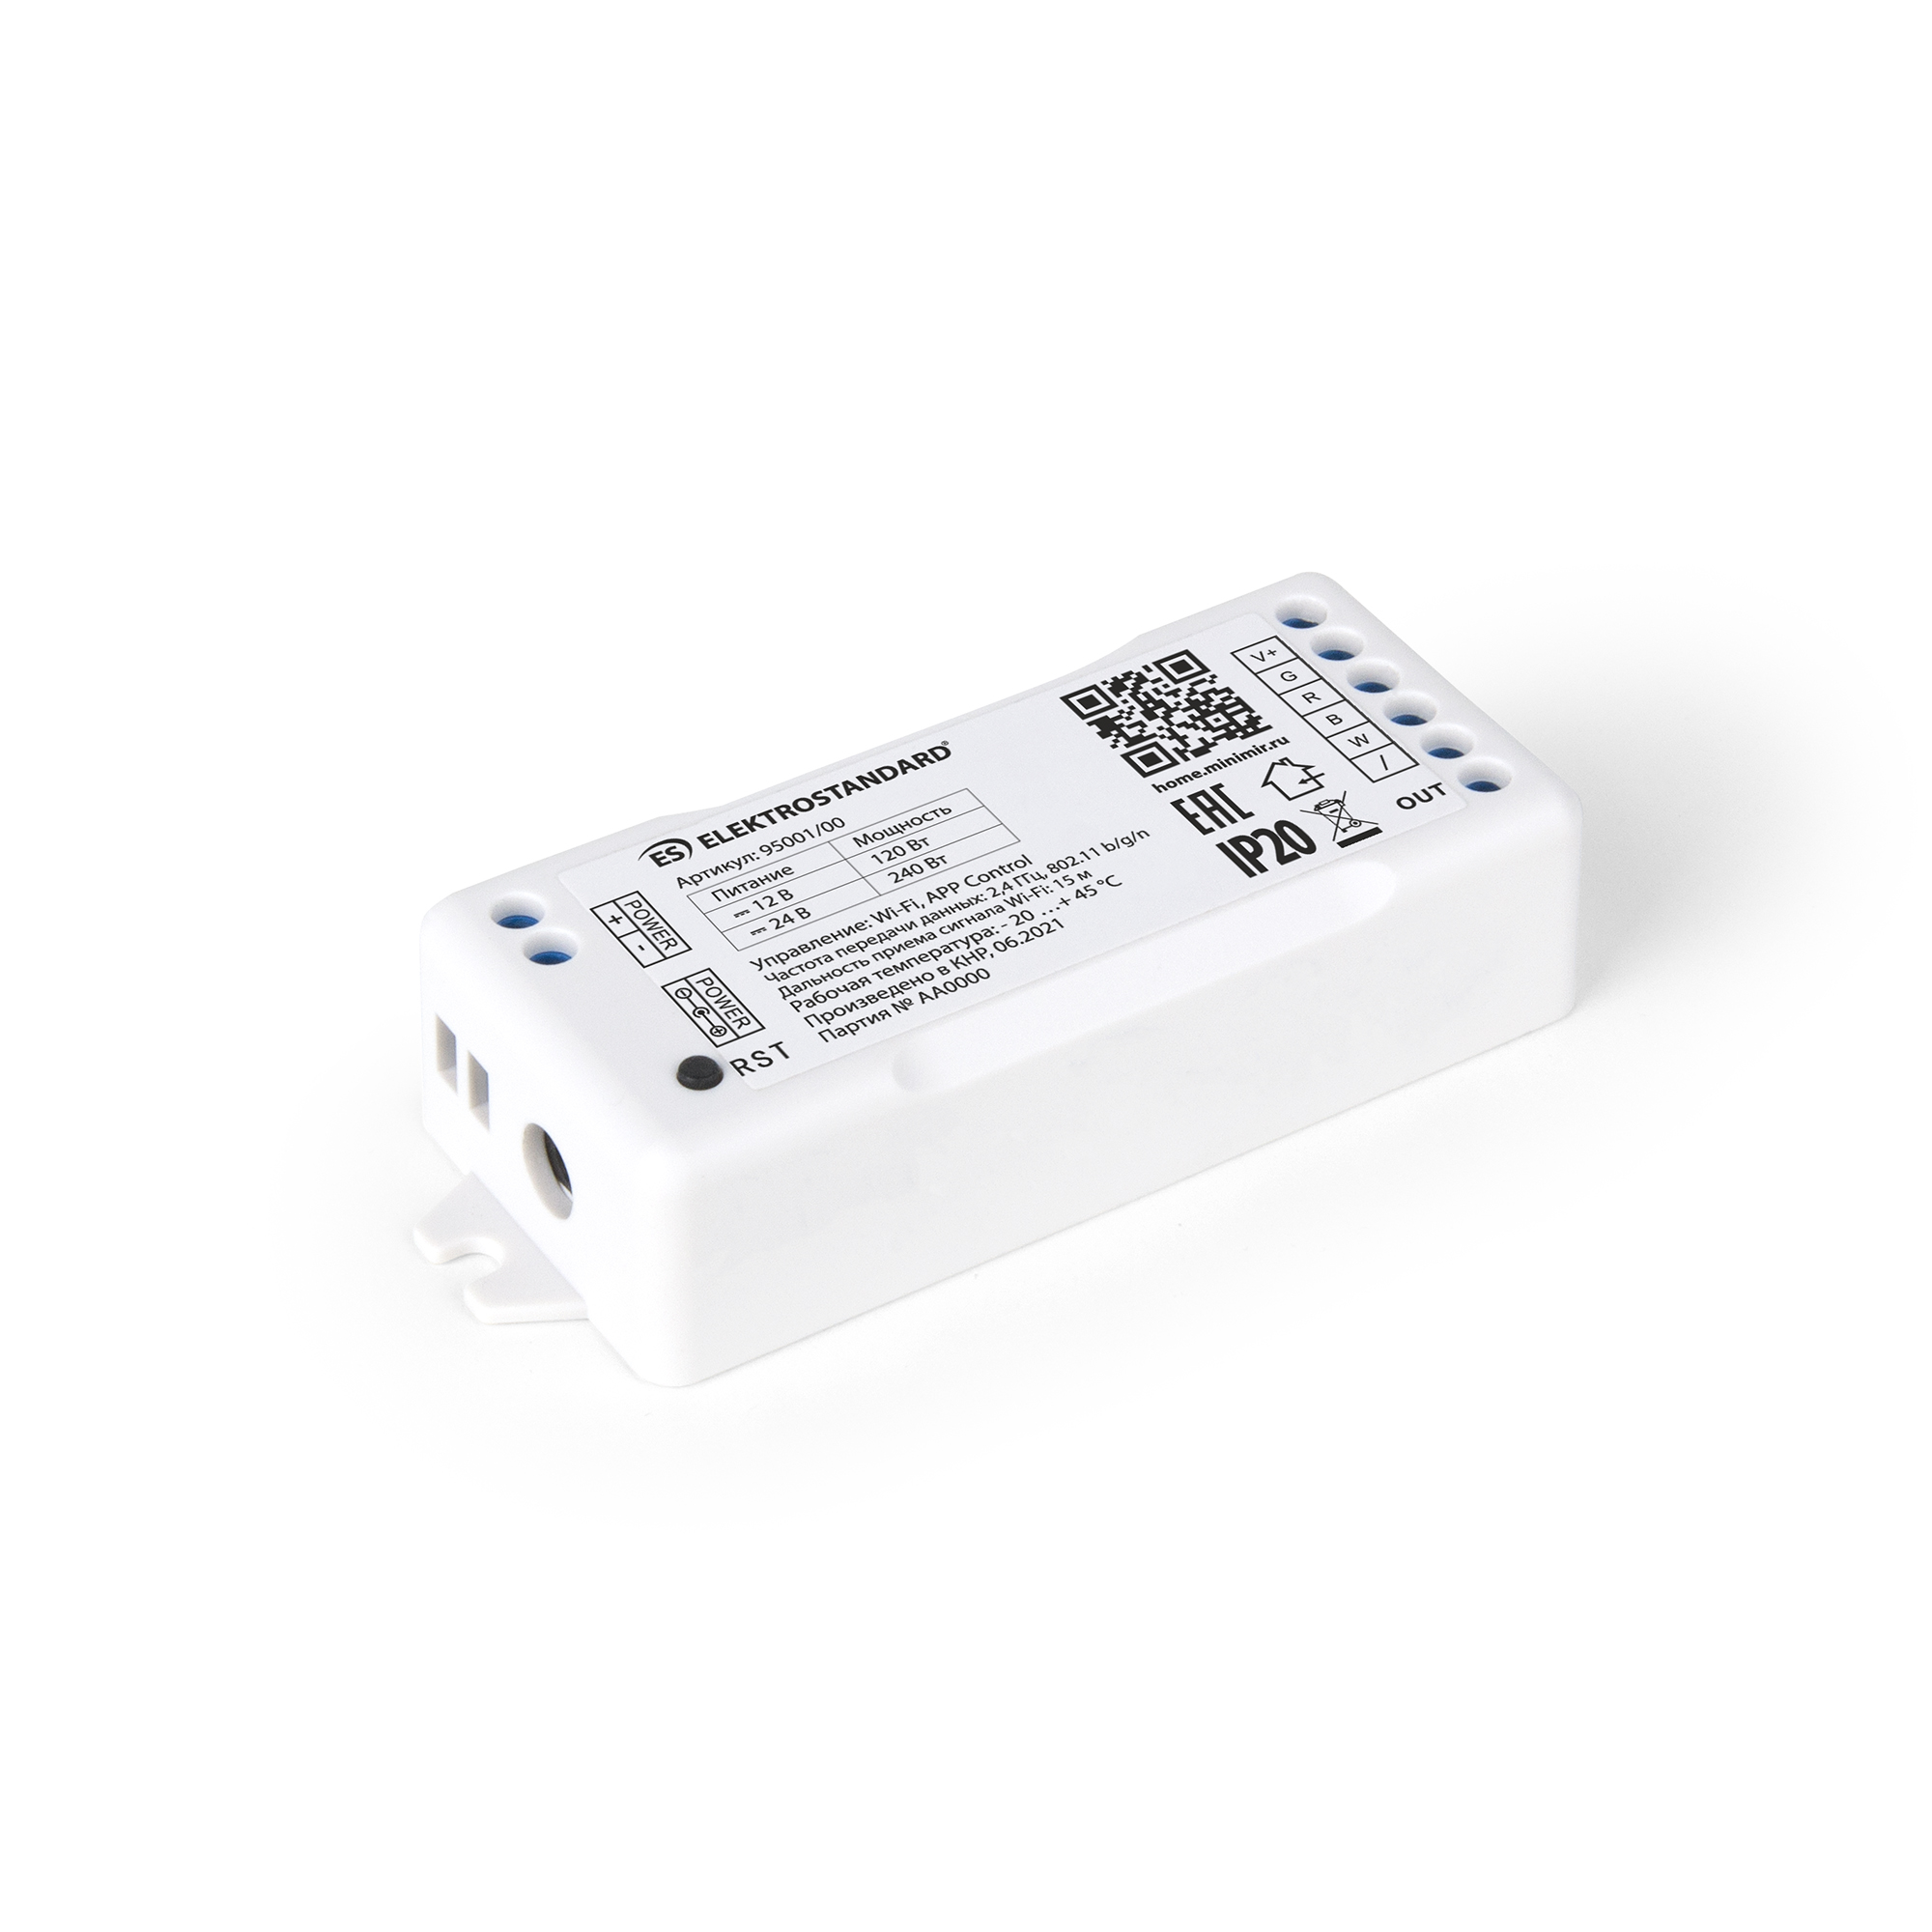 Умный контроллер для светодиодных лент RGBW 12-24V Elektrostandard 95001/00 Minimir Home умный контроллер для светодиодных лент elektrostandard